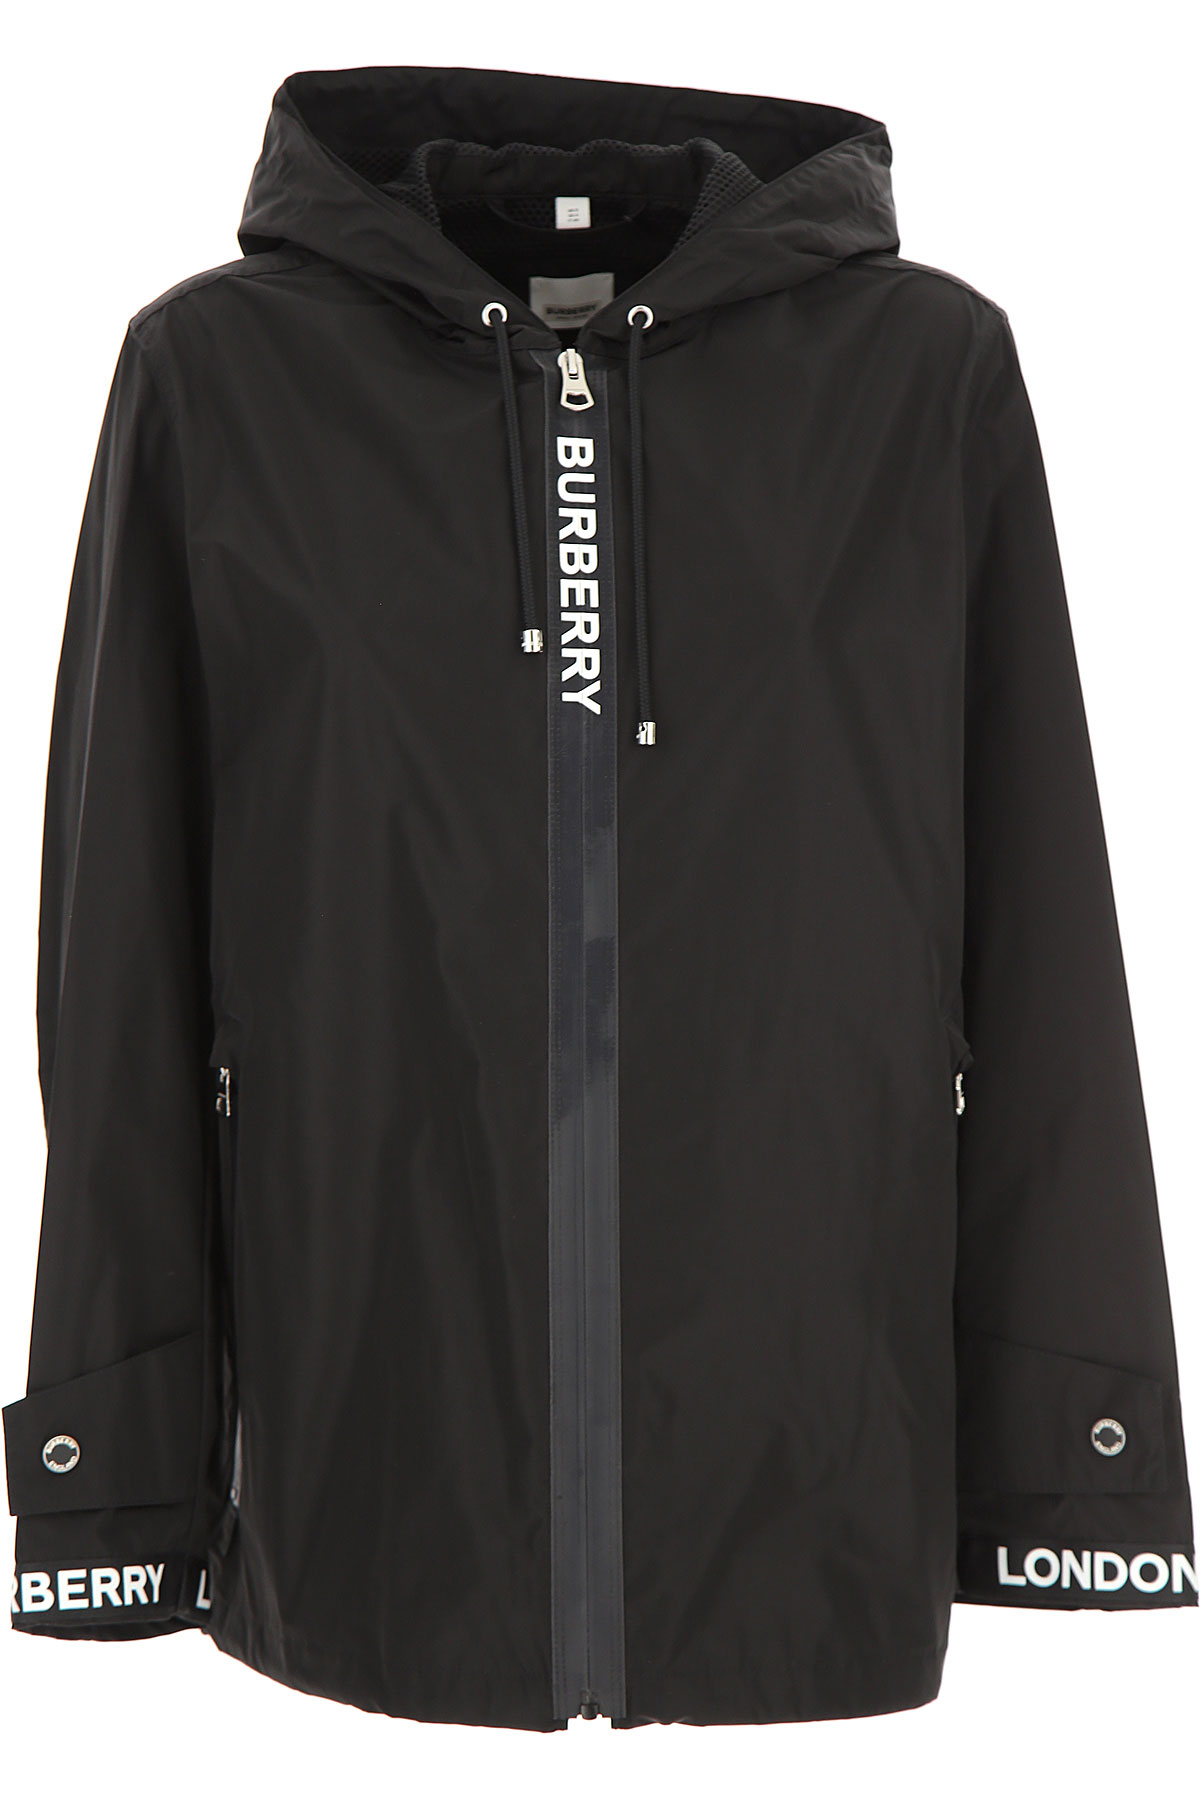 Burberry Jacke für Damen Günstig im Sale, Schwarz, Polyester, 2017, 38 40 M